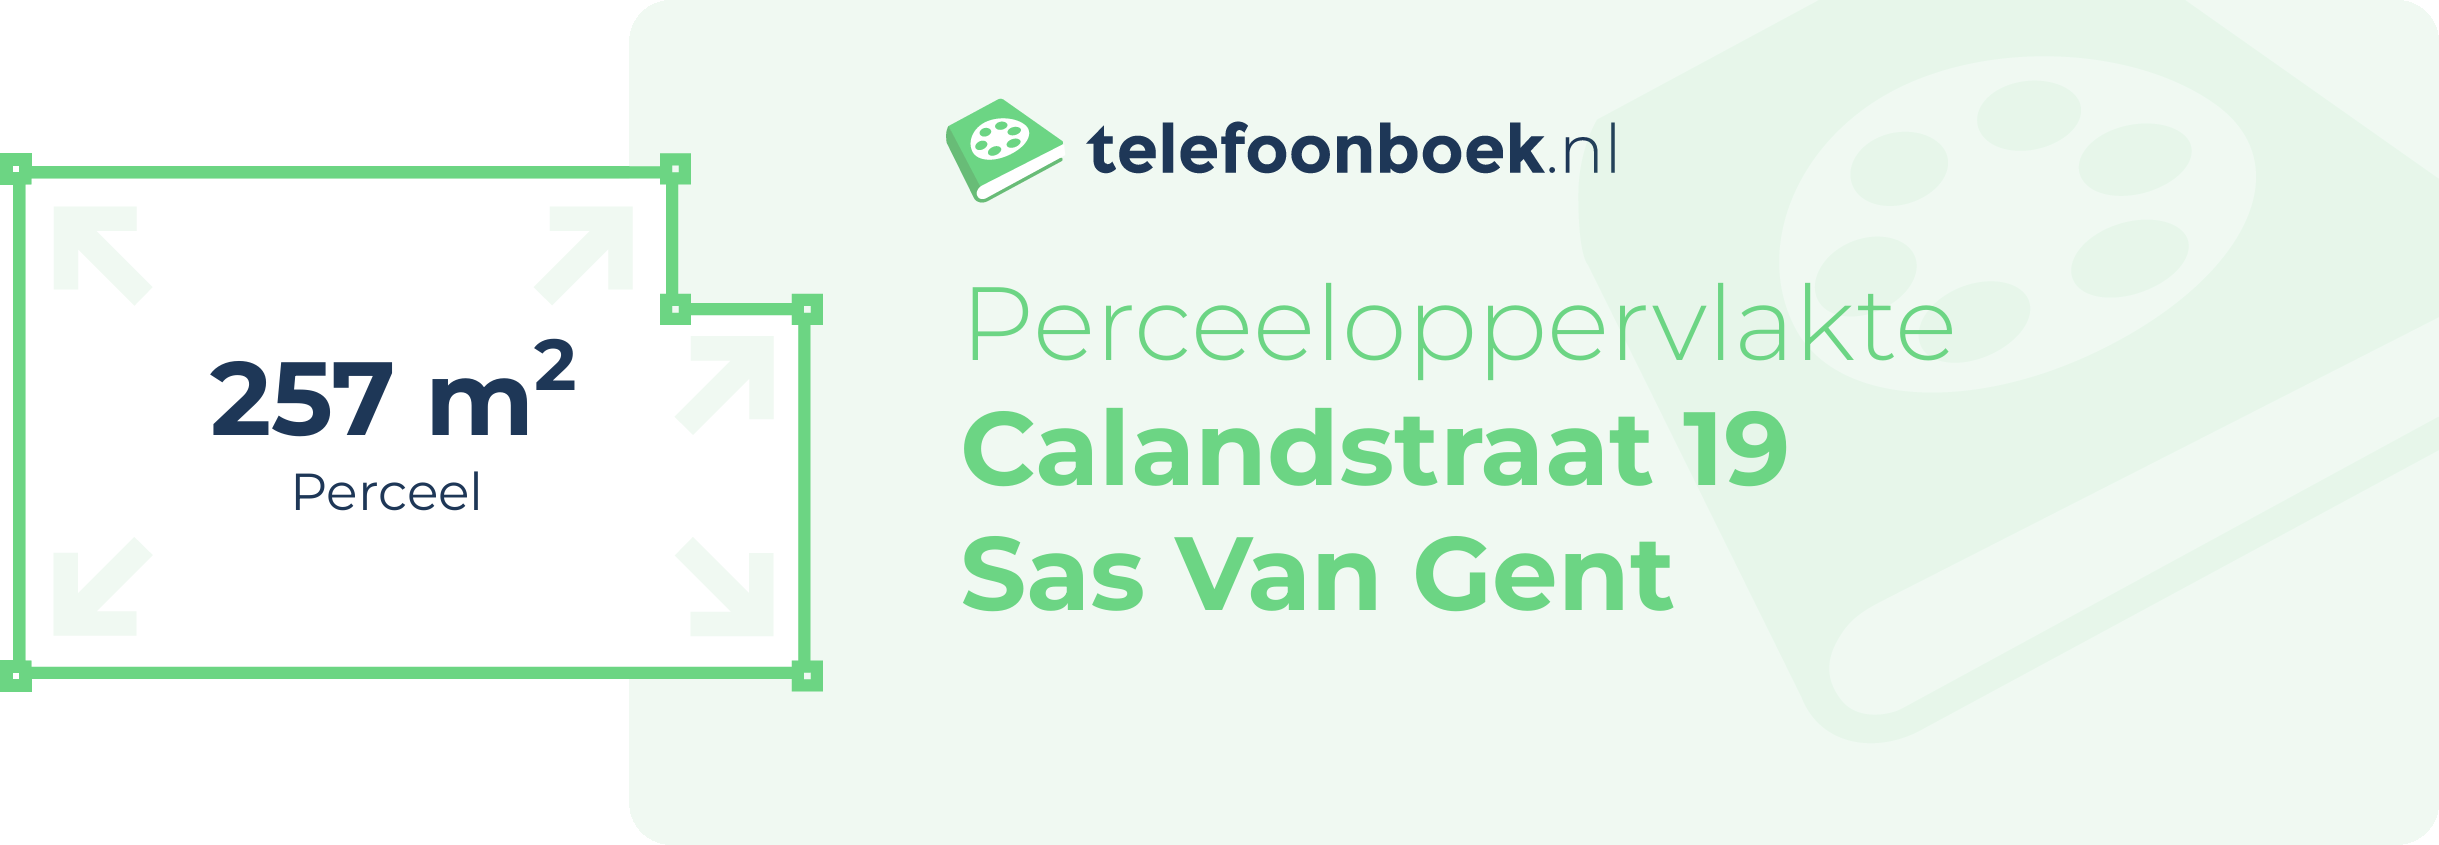 Perceeloppervlakte Calandstraat 19 Sas Van Gent